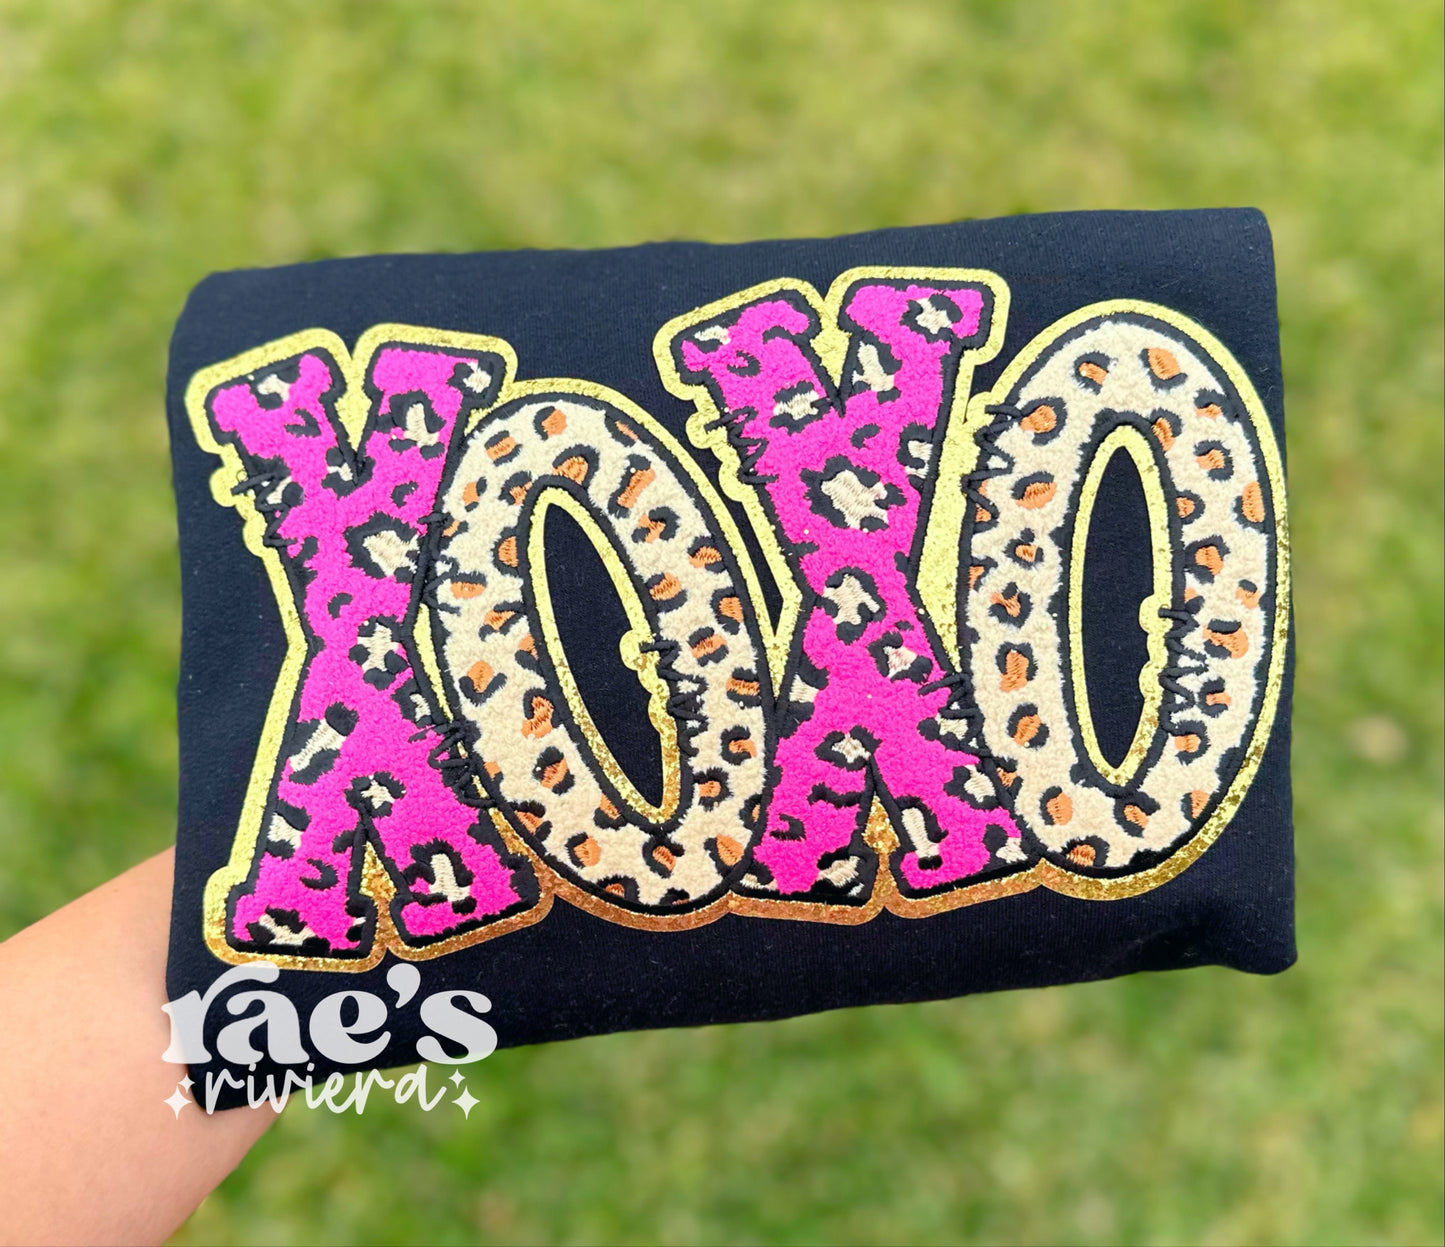 XOXO Patch Sweatshirt/Tee